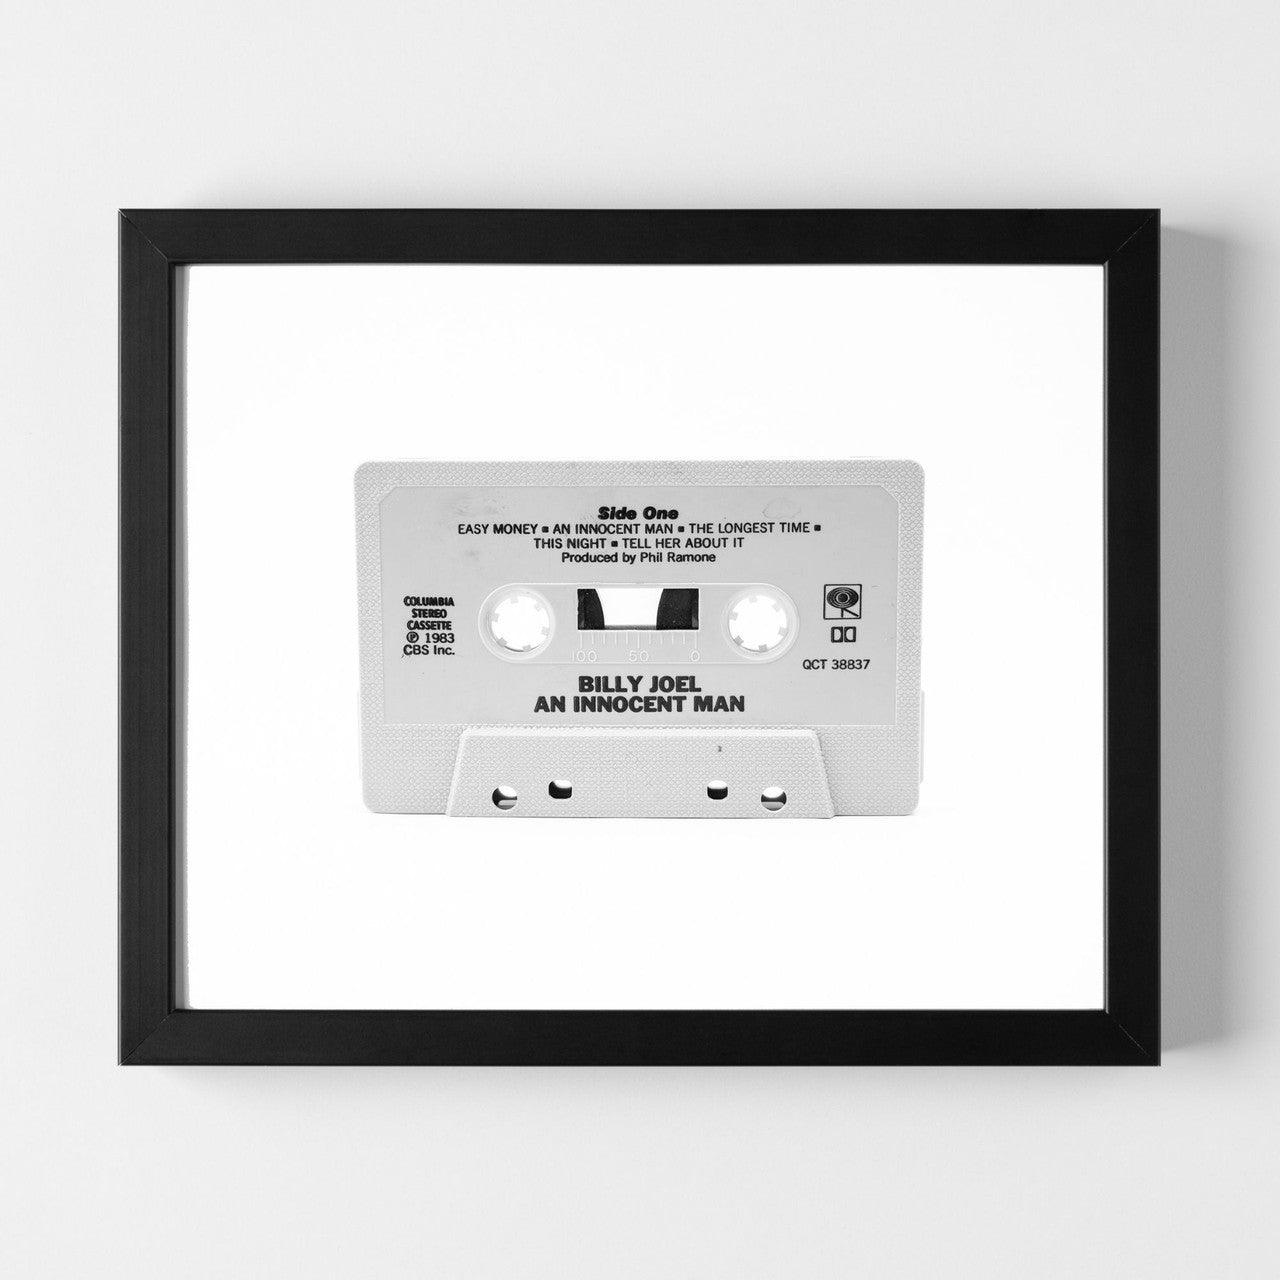 Modern art photo of the cassette of "Billy Joel An Innocent Man"